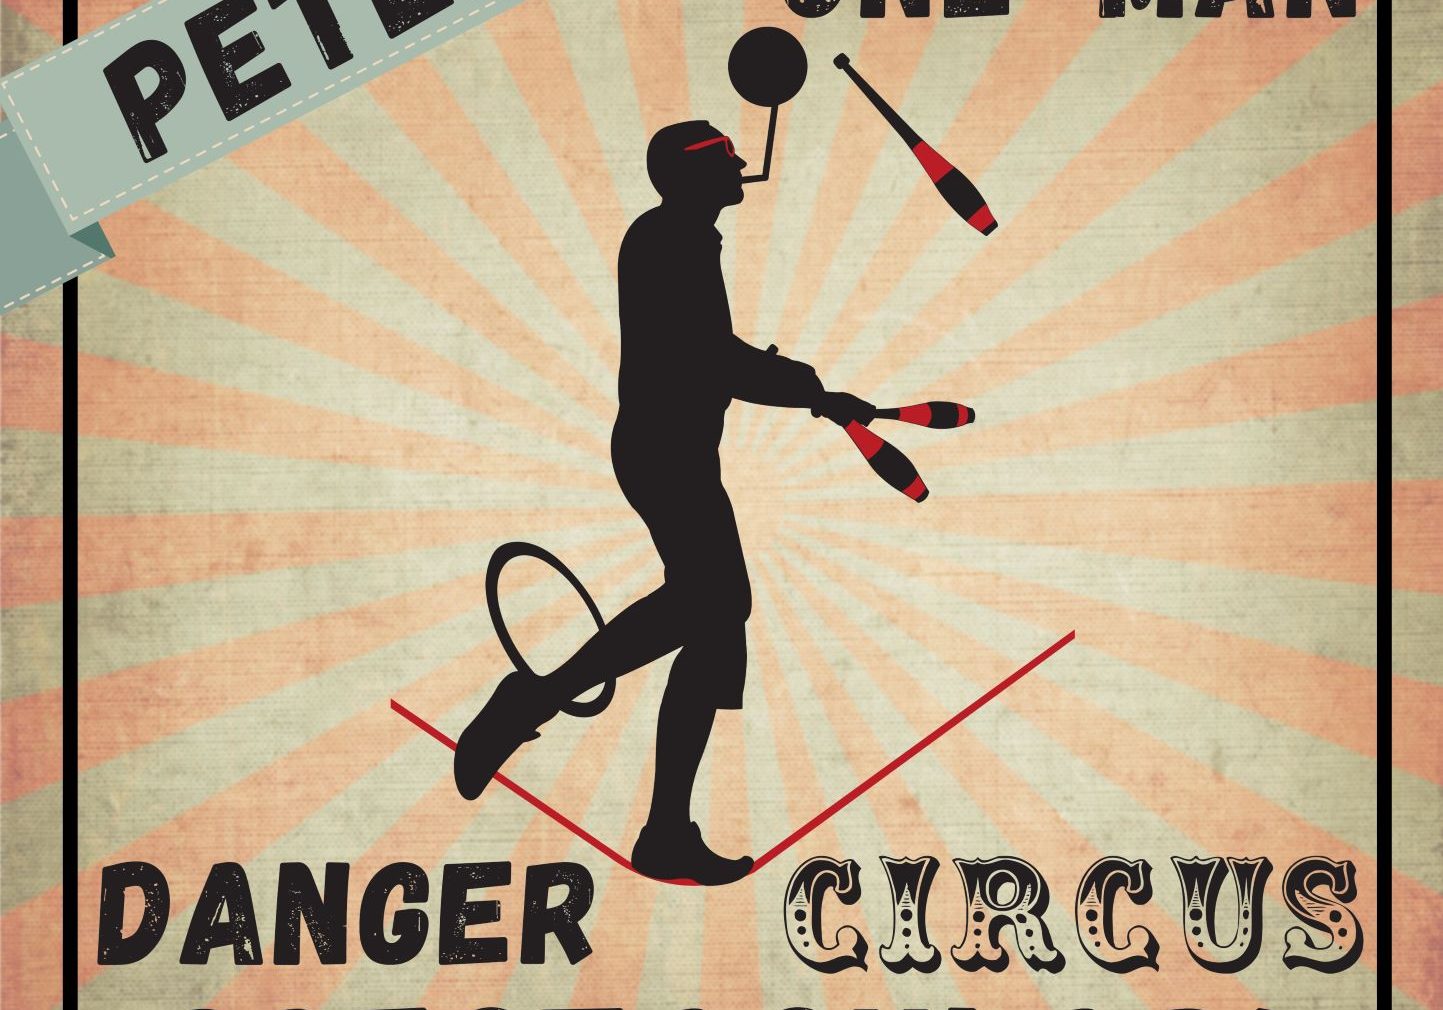 Peter's One Man Danger Circus Spectacular